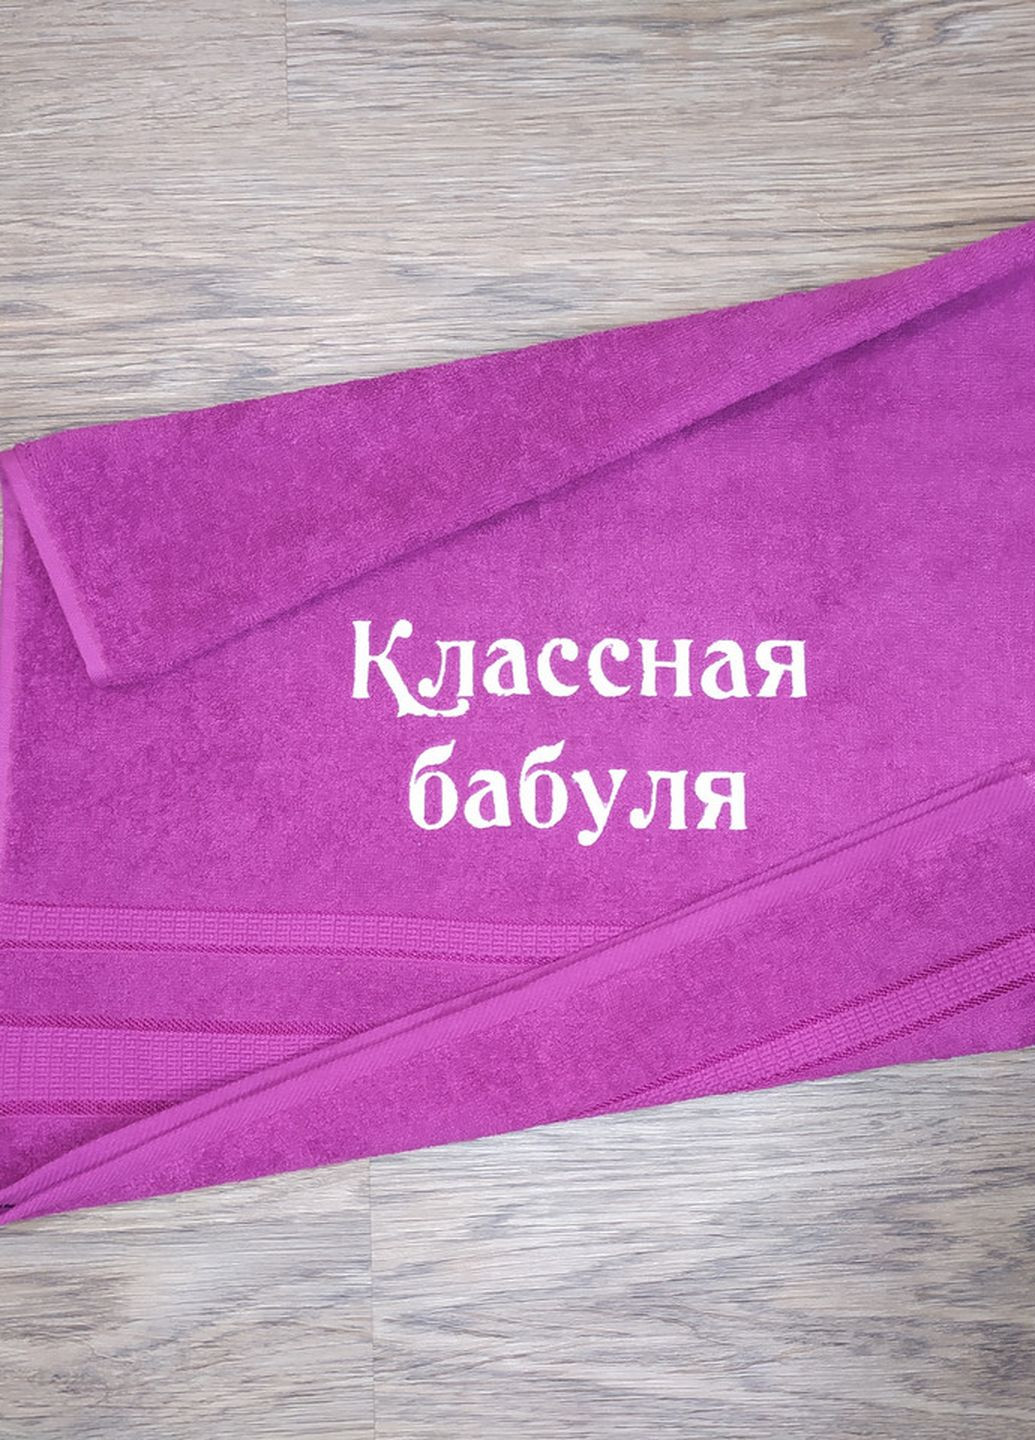 No Brand полотенце с вышивкой махровое лицевое 50*90 фуксия бабушке 00127 однотонный фуксия производство - Украина